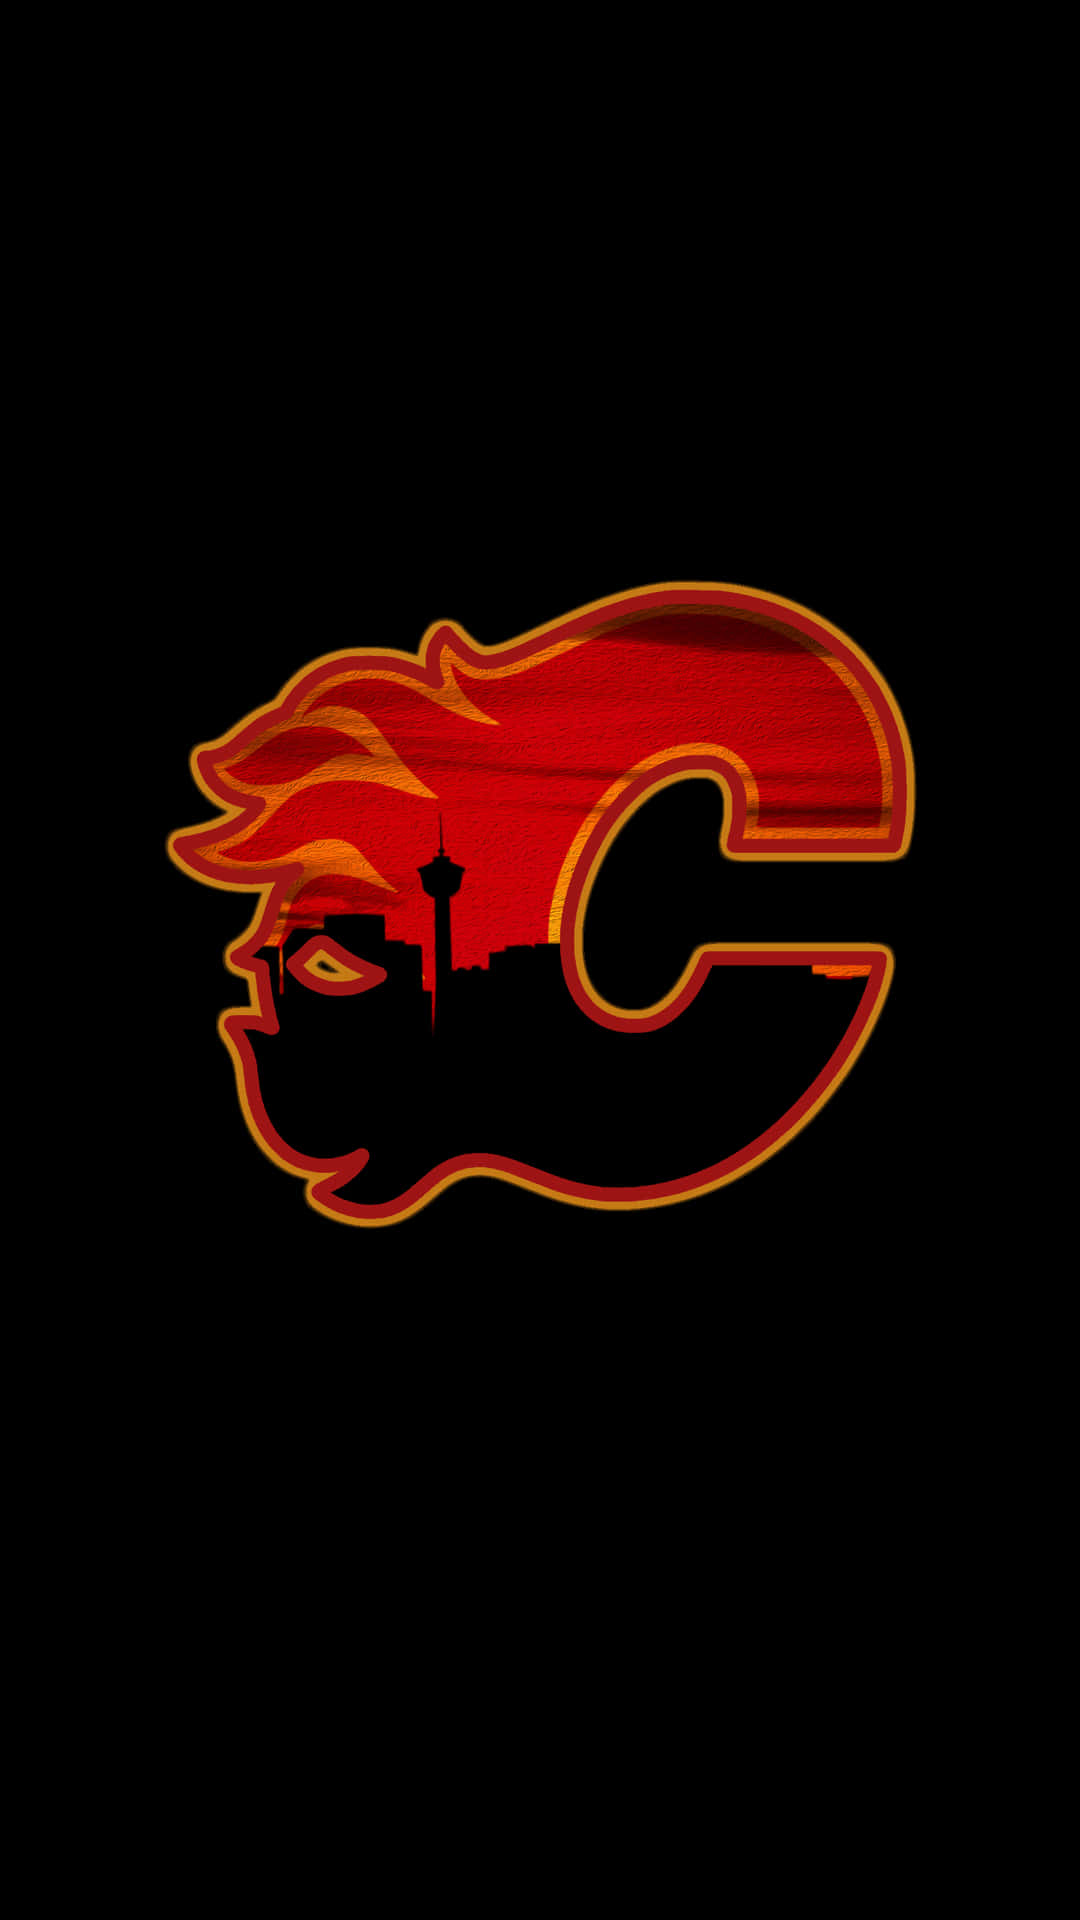 Etlogo Af Calgary Flames På En Sort Baggrund.